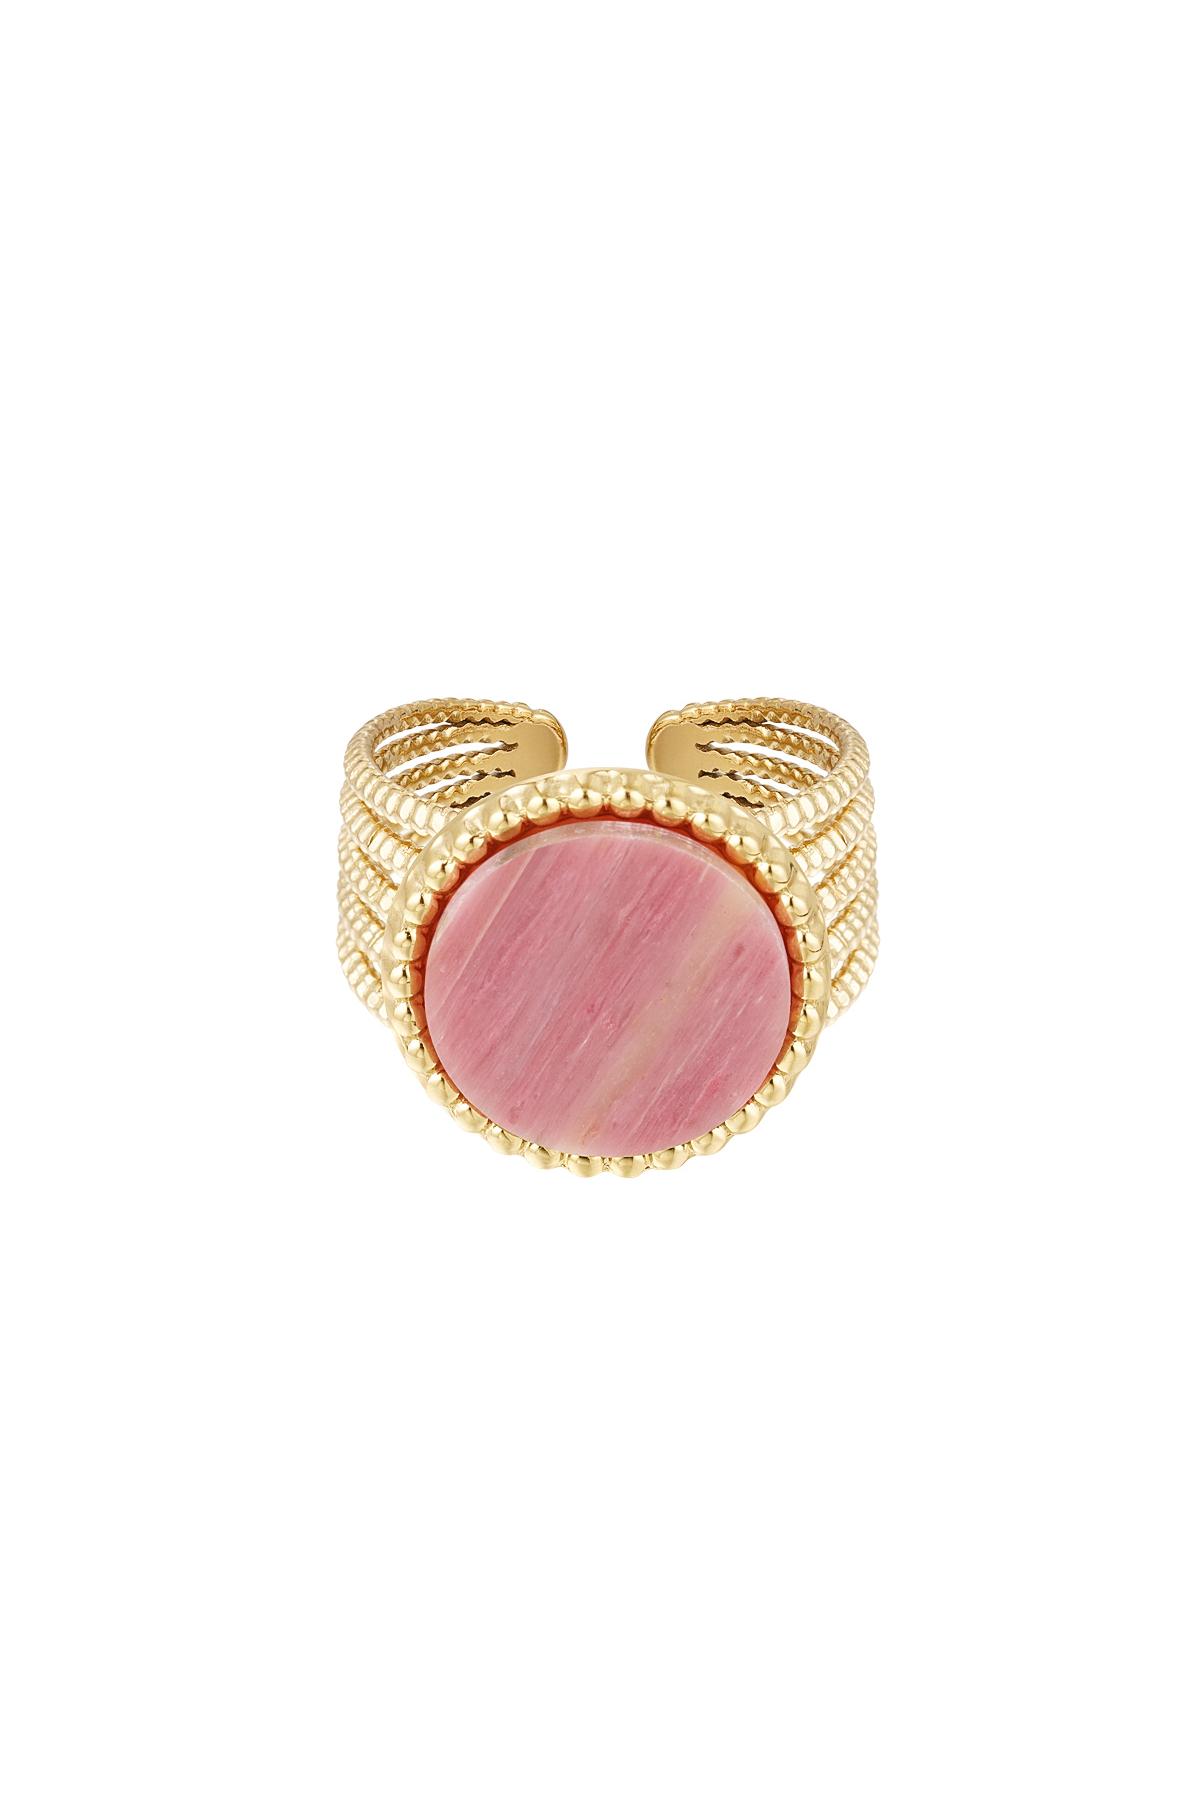 Taşlı Bildiri Yüzüğü - Pembe - Doğal taş koleksiyonu Pink & Gold Stainless Steel One size h5 